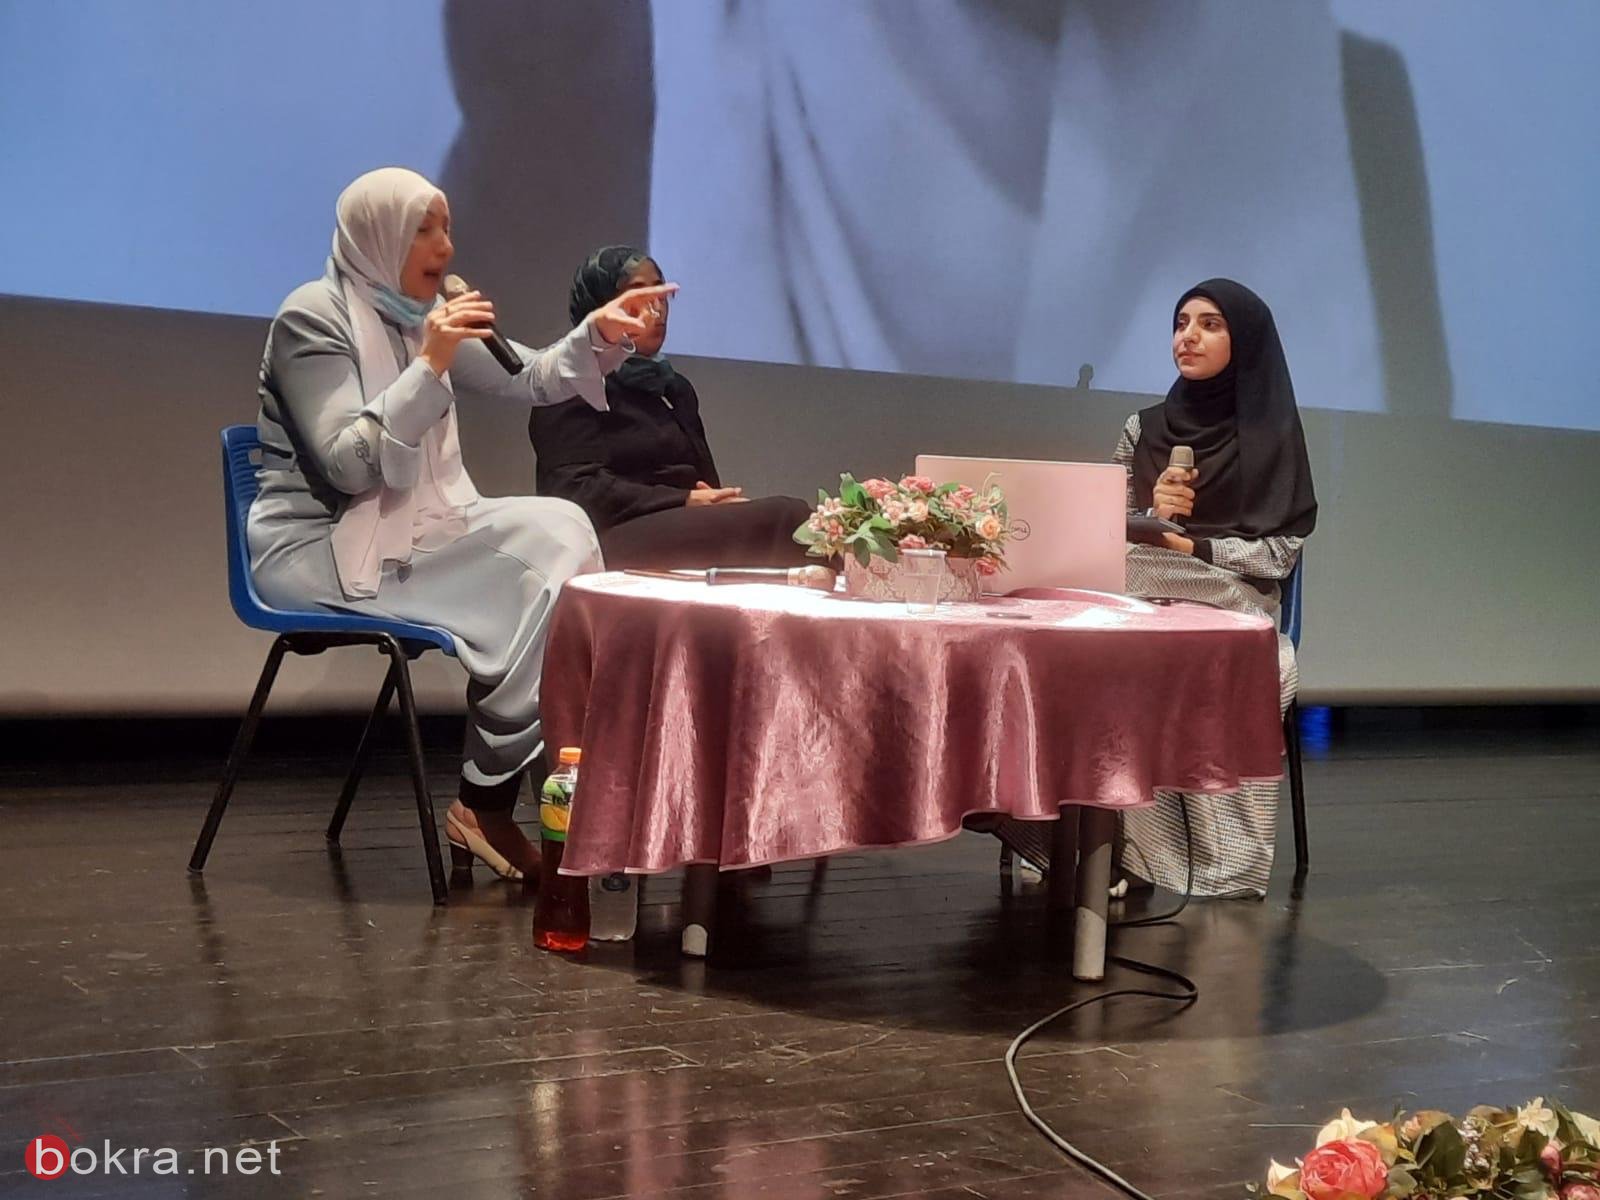 إيمان خطيب ياسين: أشجّع الشابات العربيات والمحجبات على الدخول لعالم السياسة لخدمة مجتمعنا-3